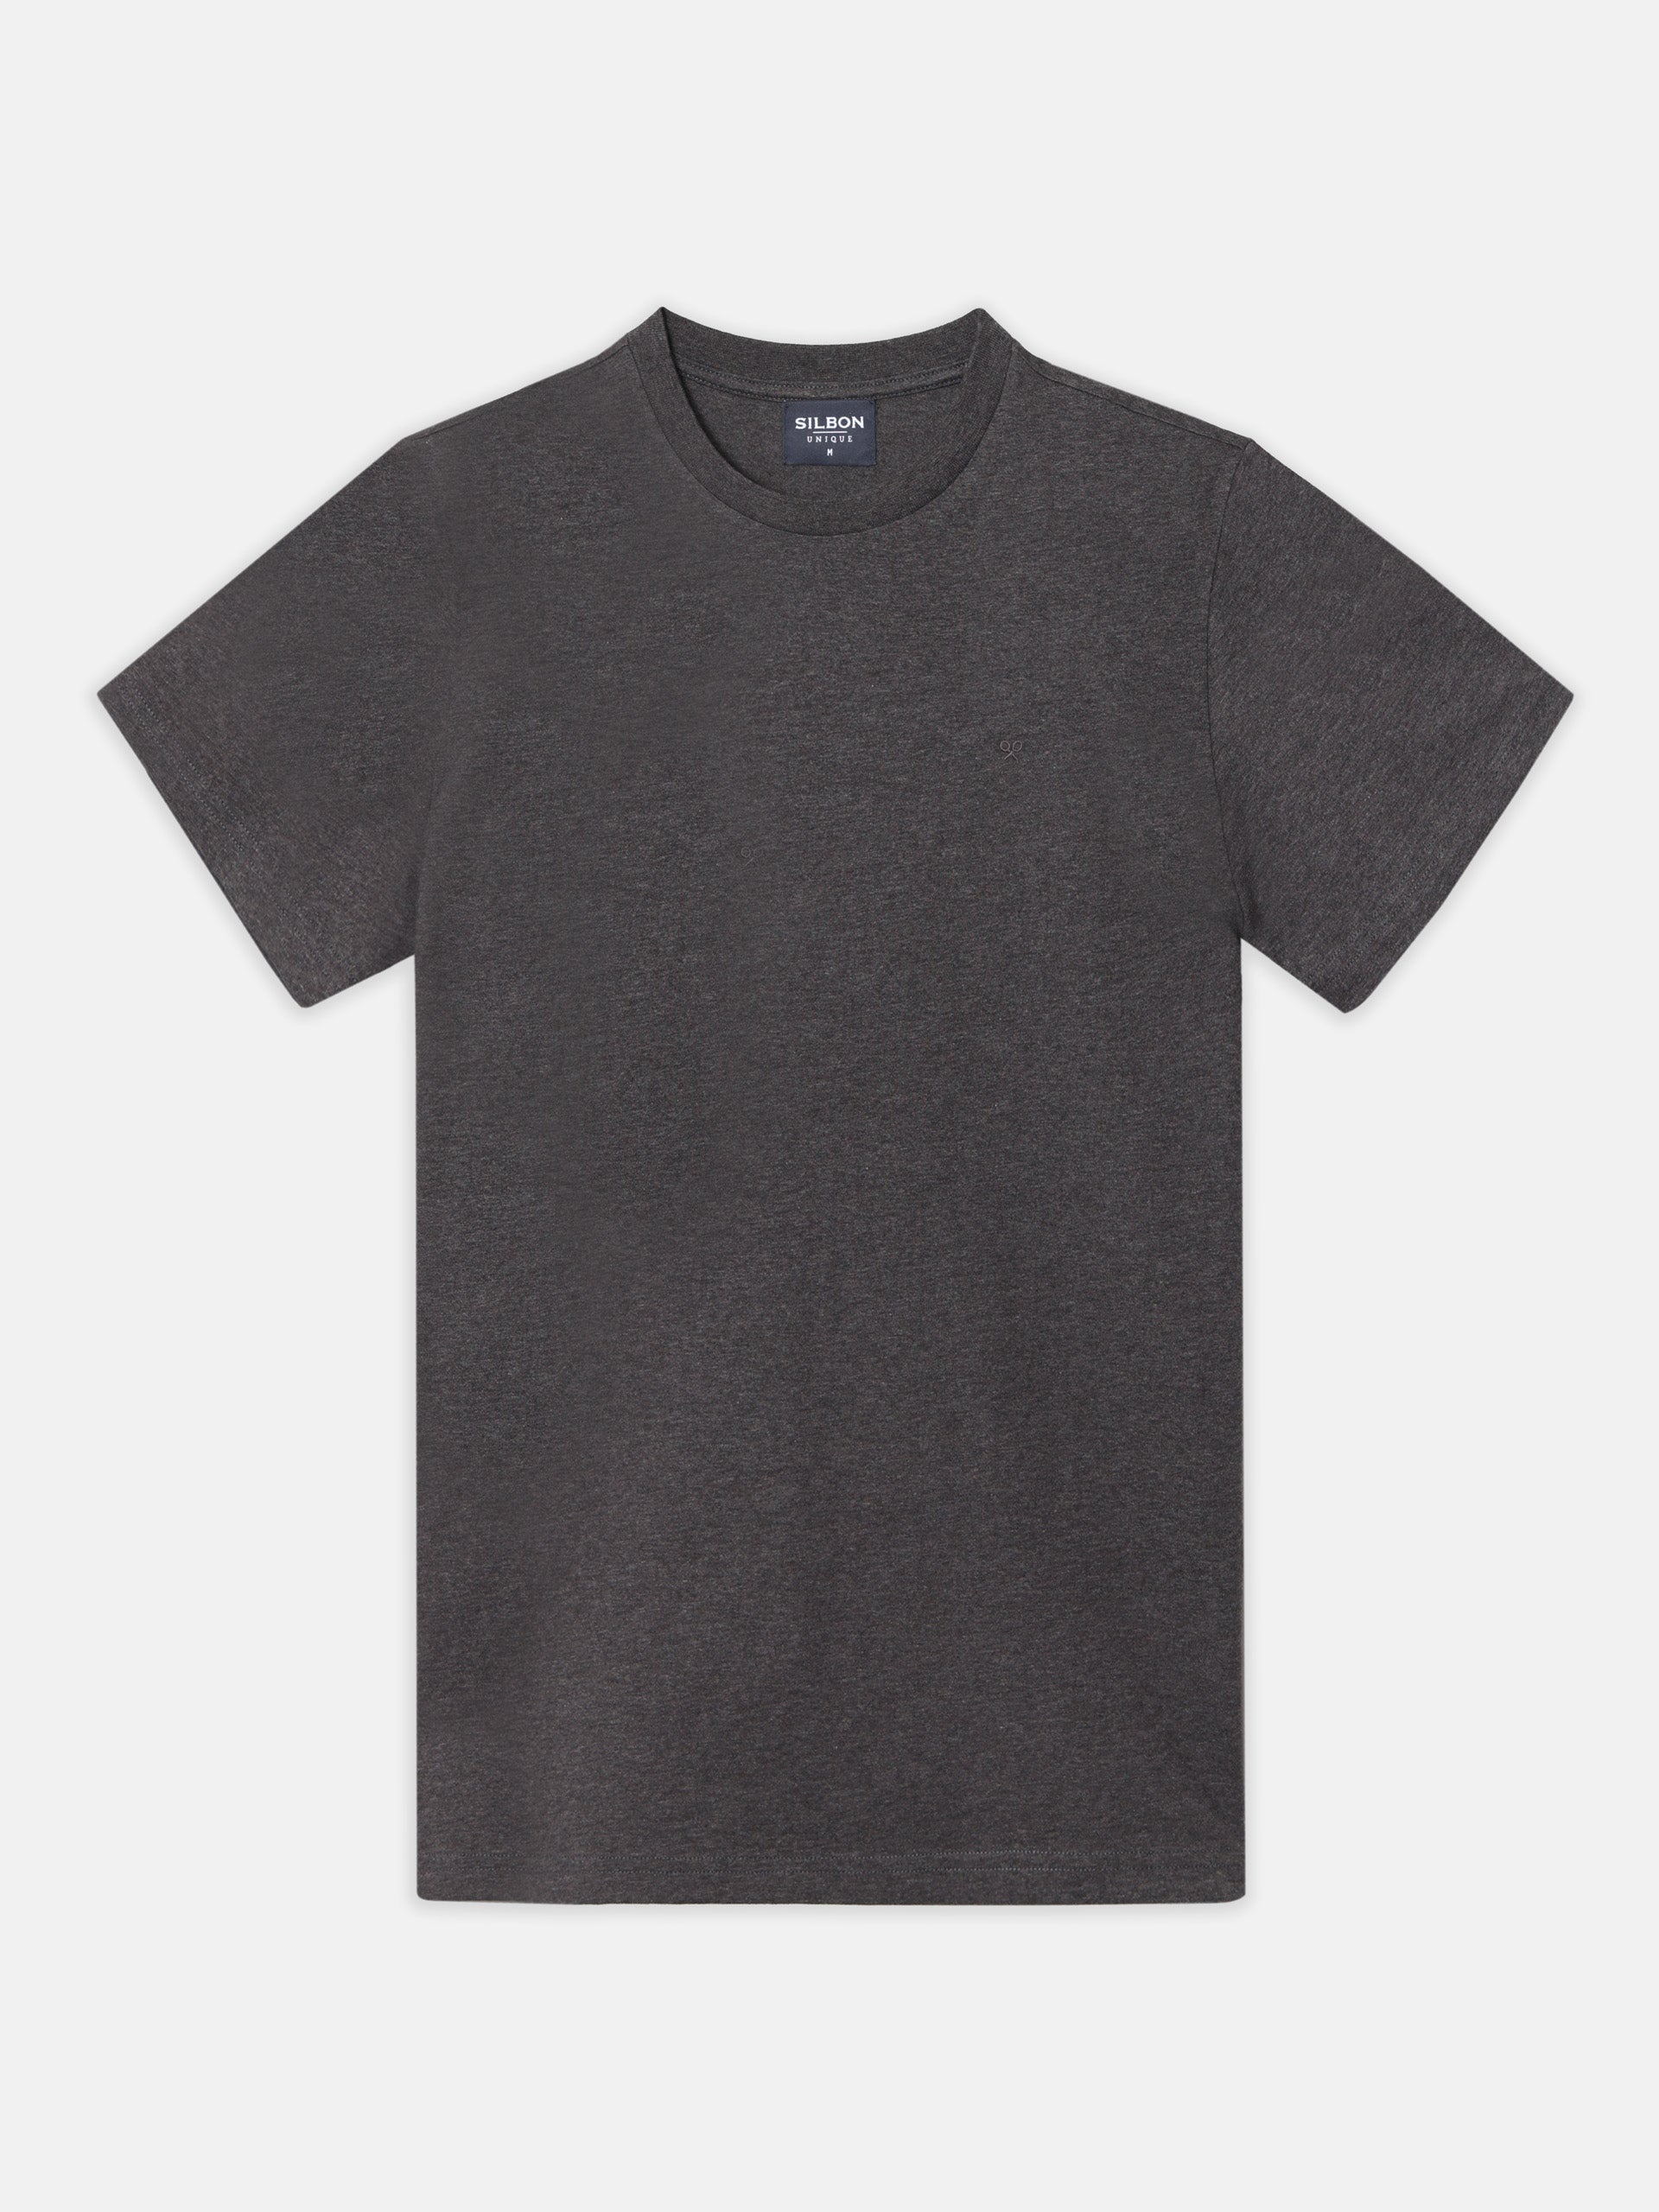 Unique slim gray t-shirt